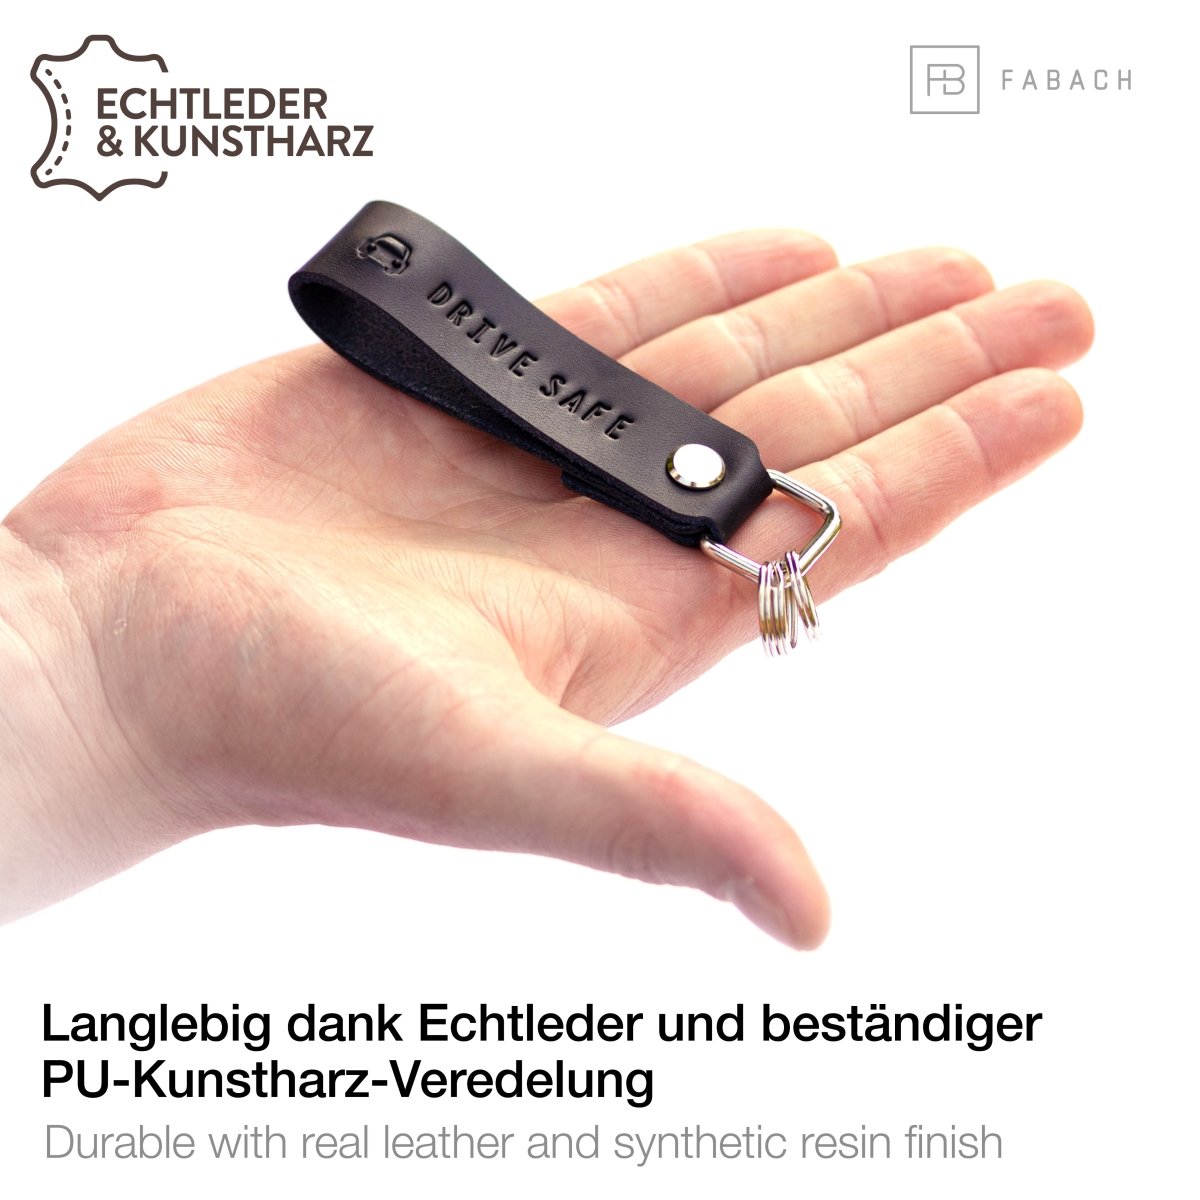 "Drive Safe" Leder-Schlüsselanhänger mit wechselbarem Schlüsselring